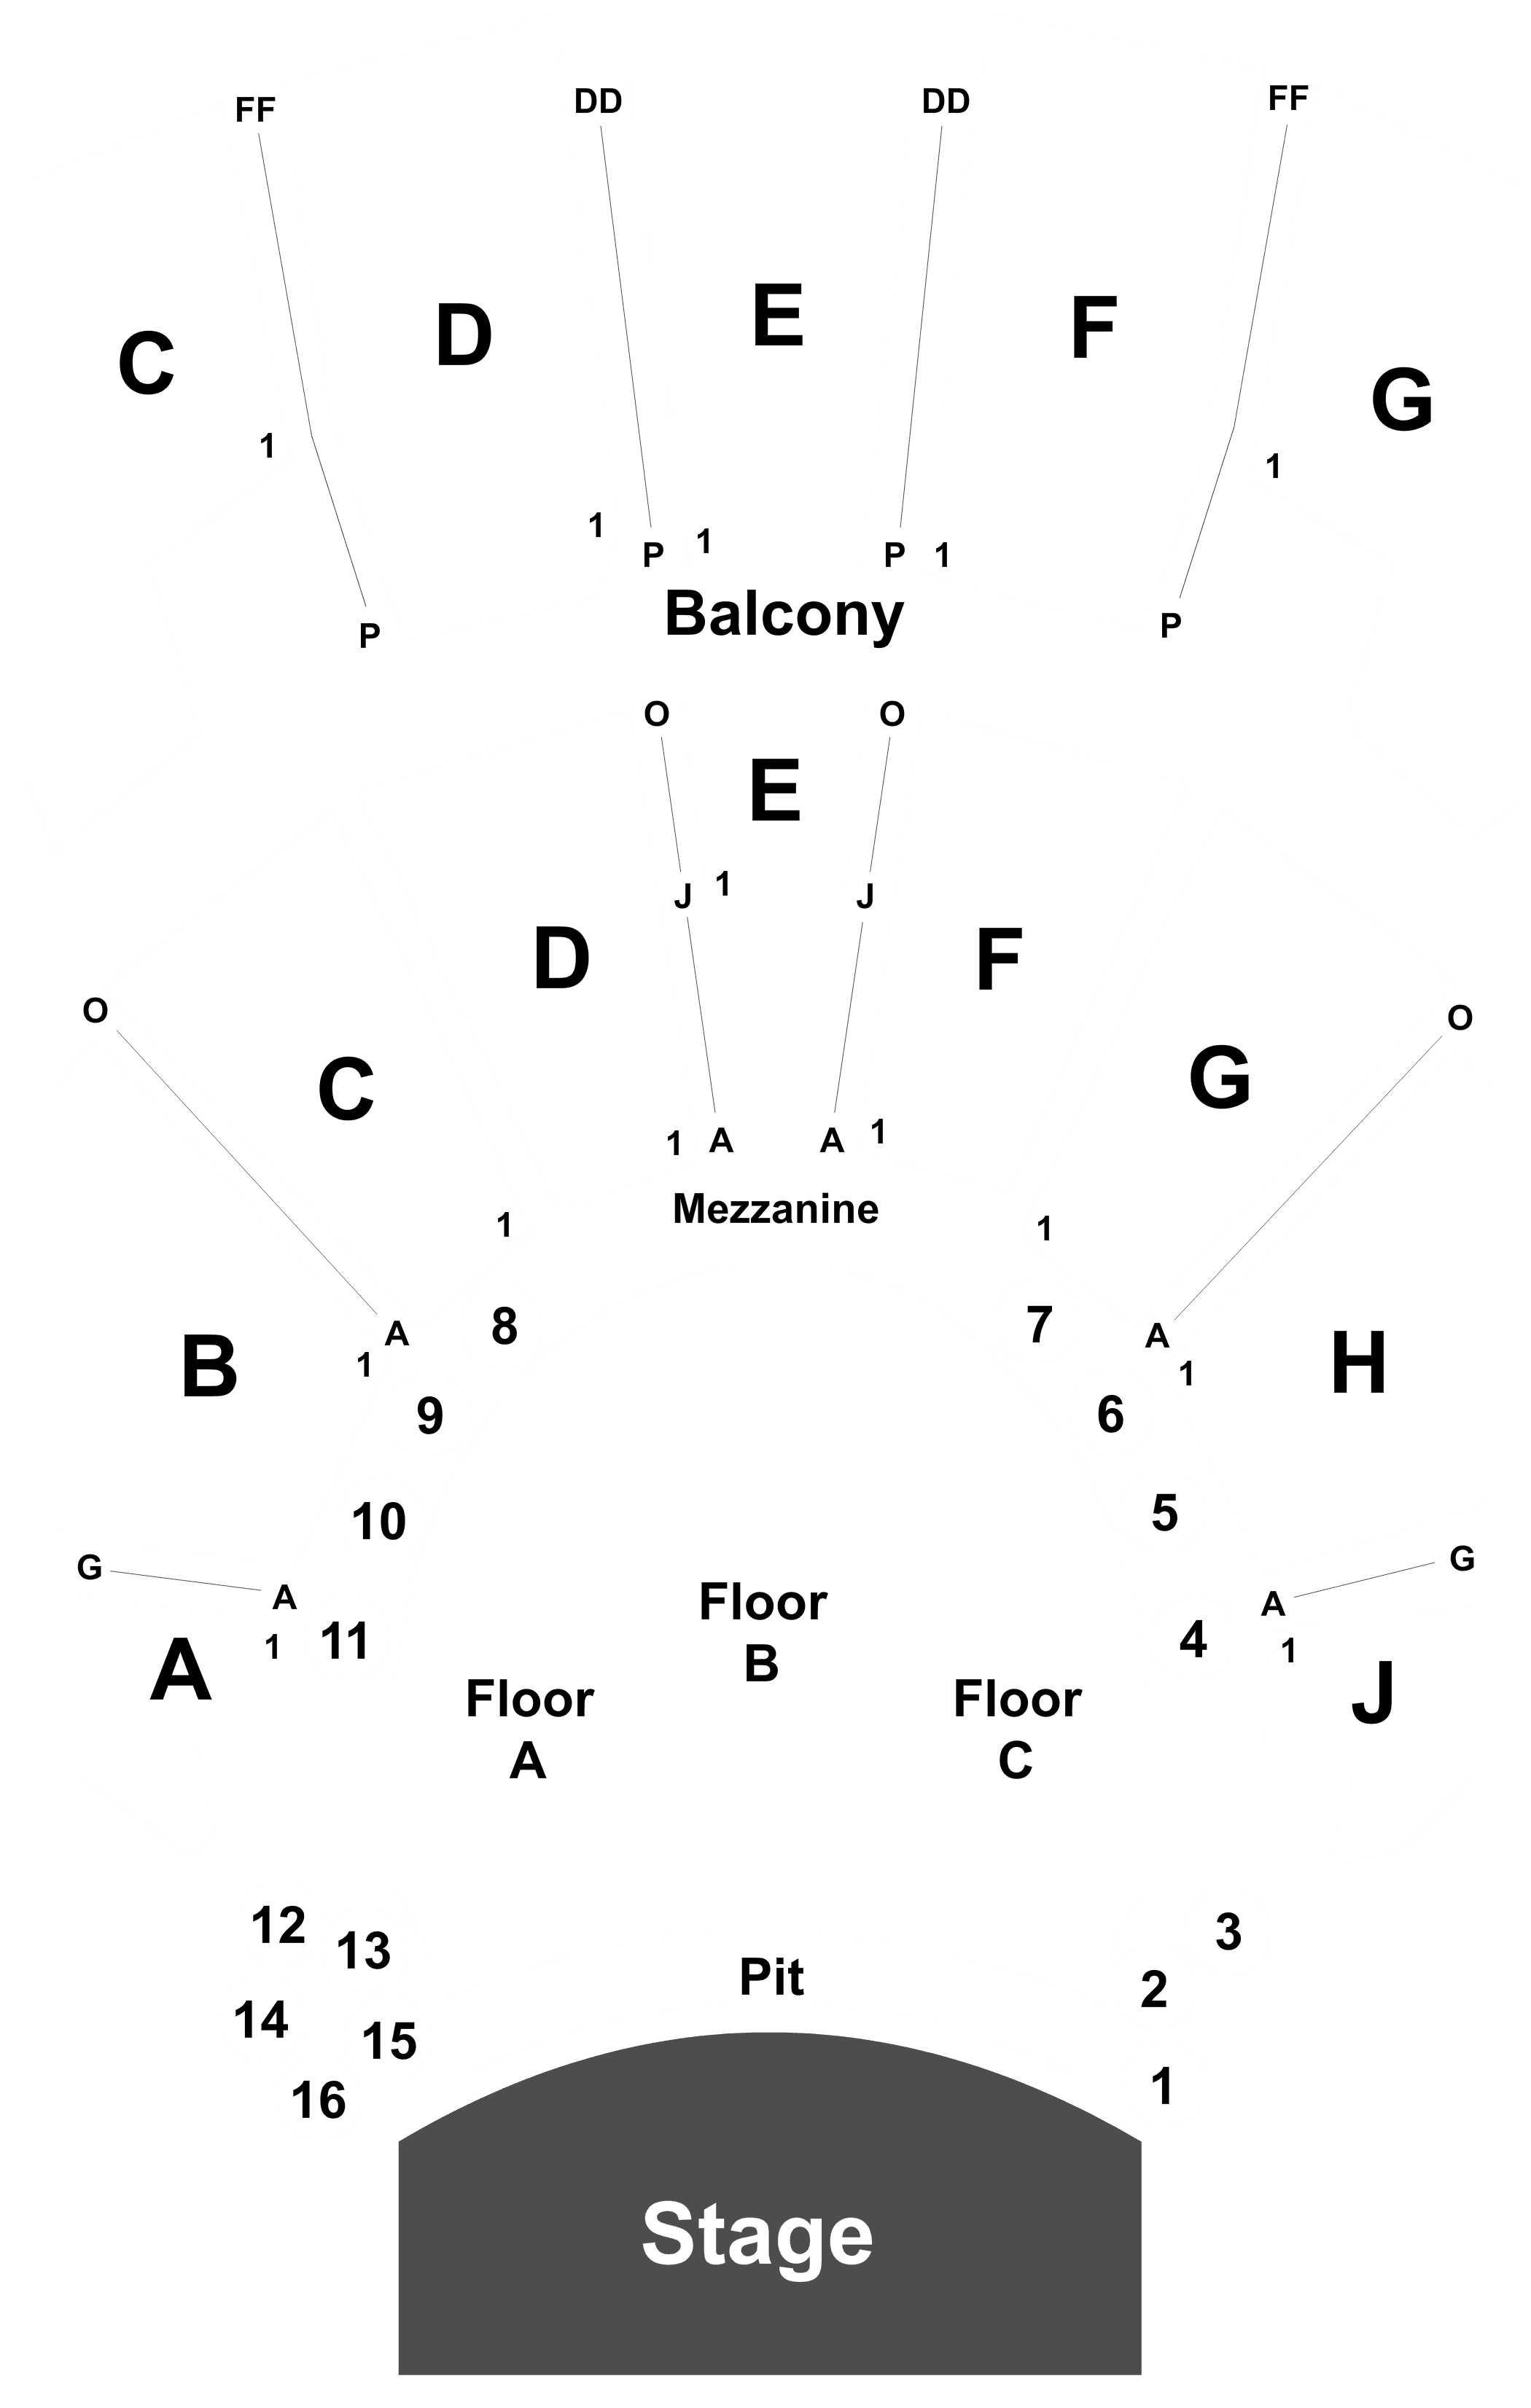 Masonic Auditorium Cleveland Seating Chart